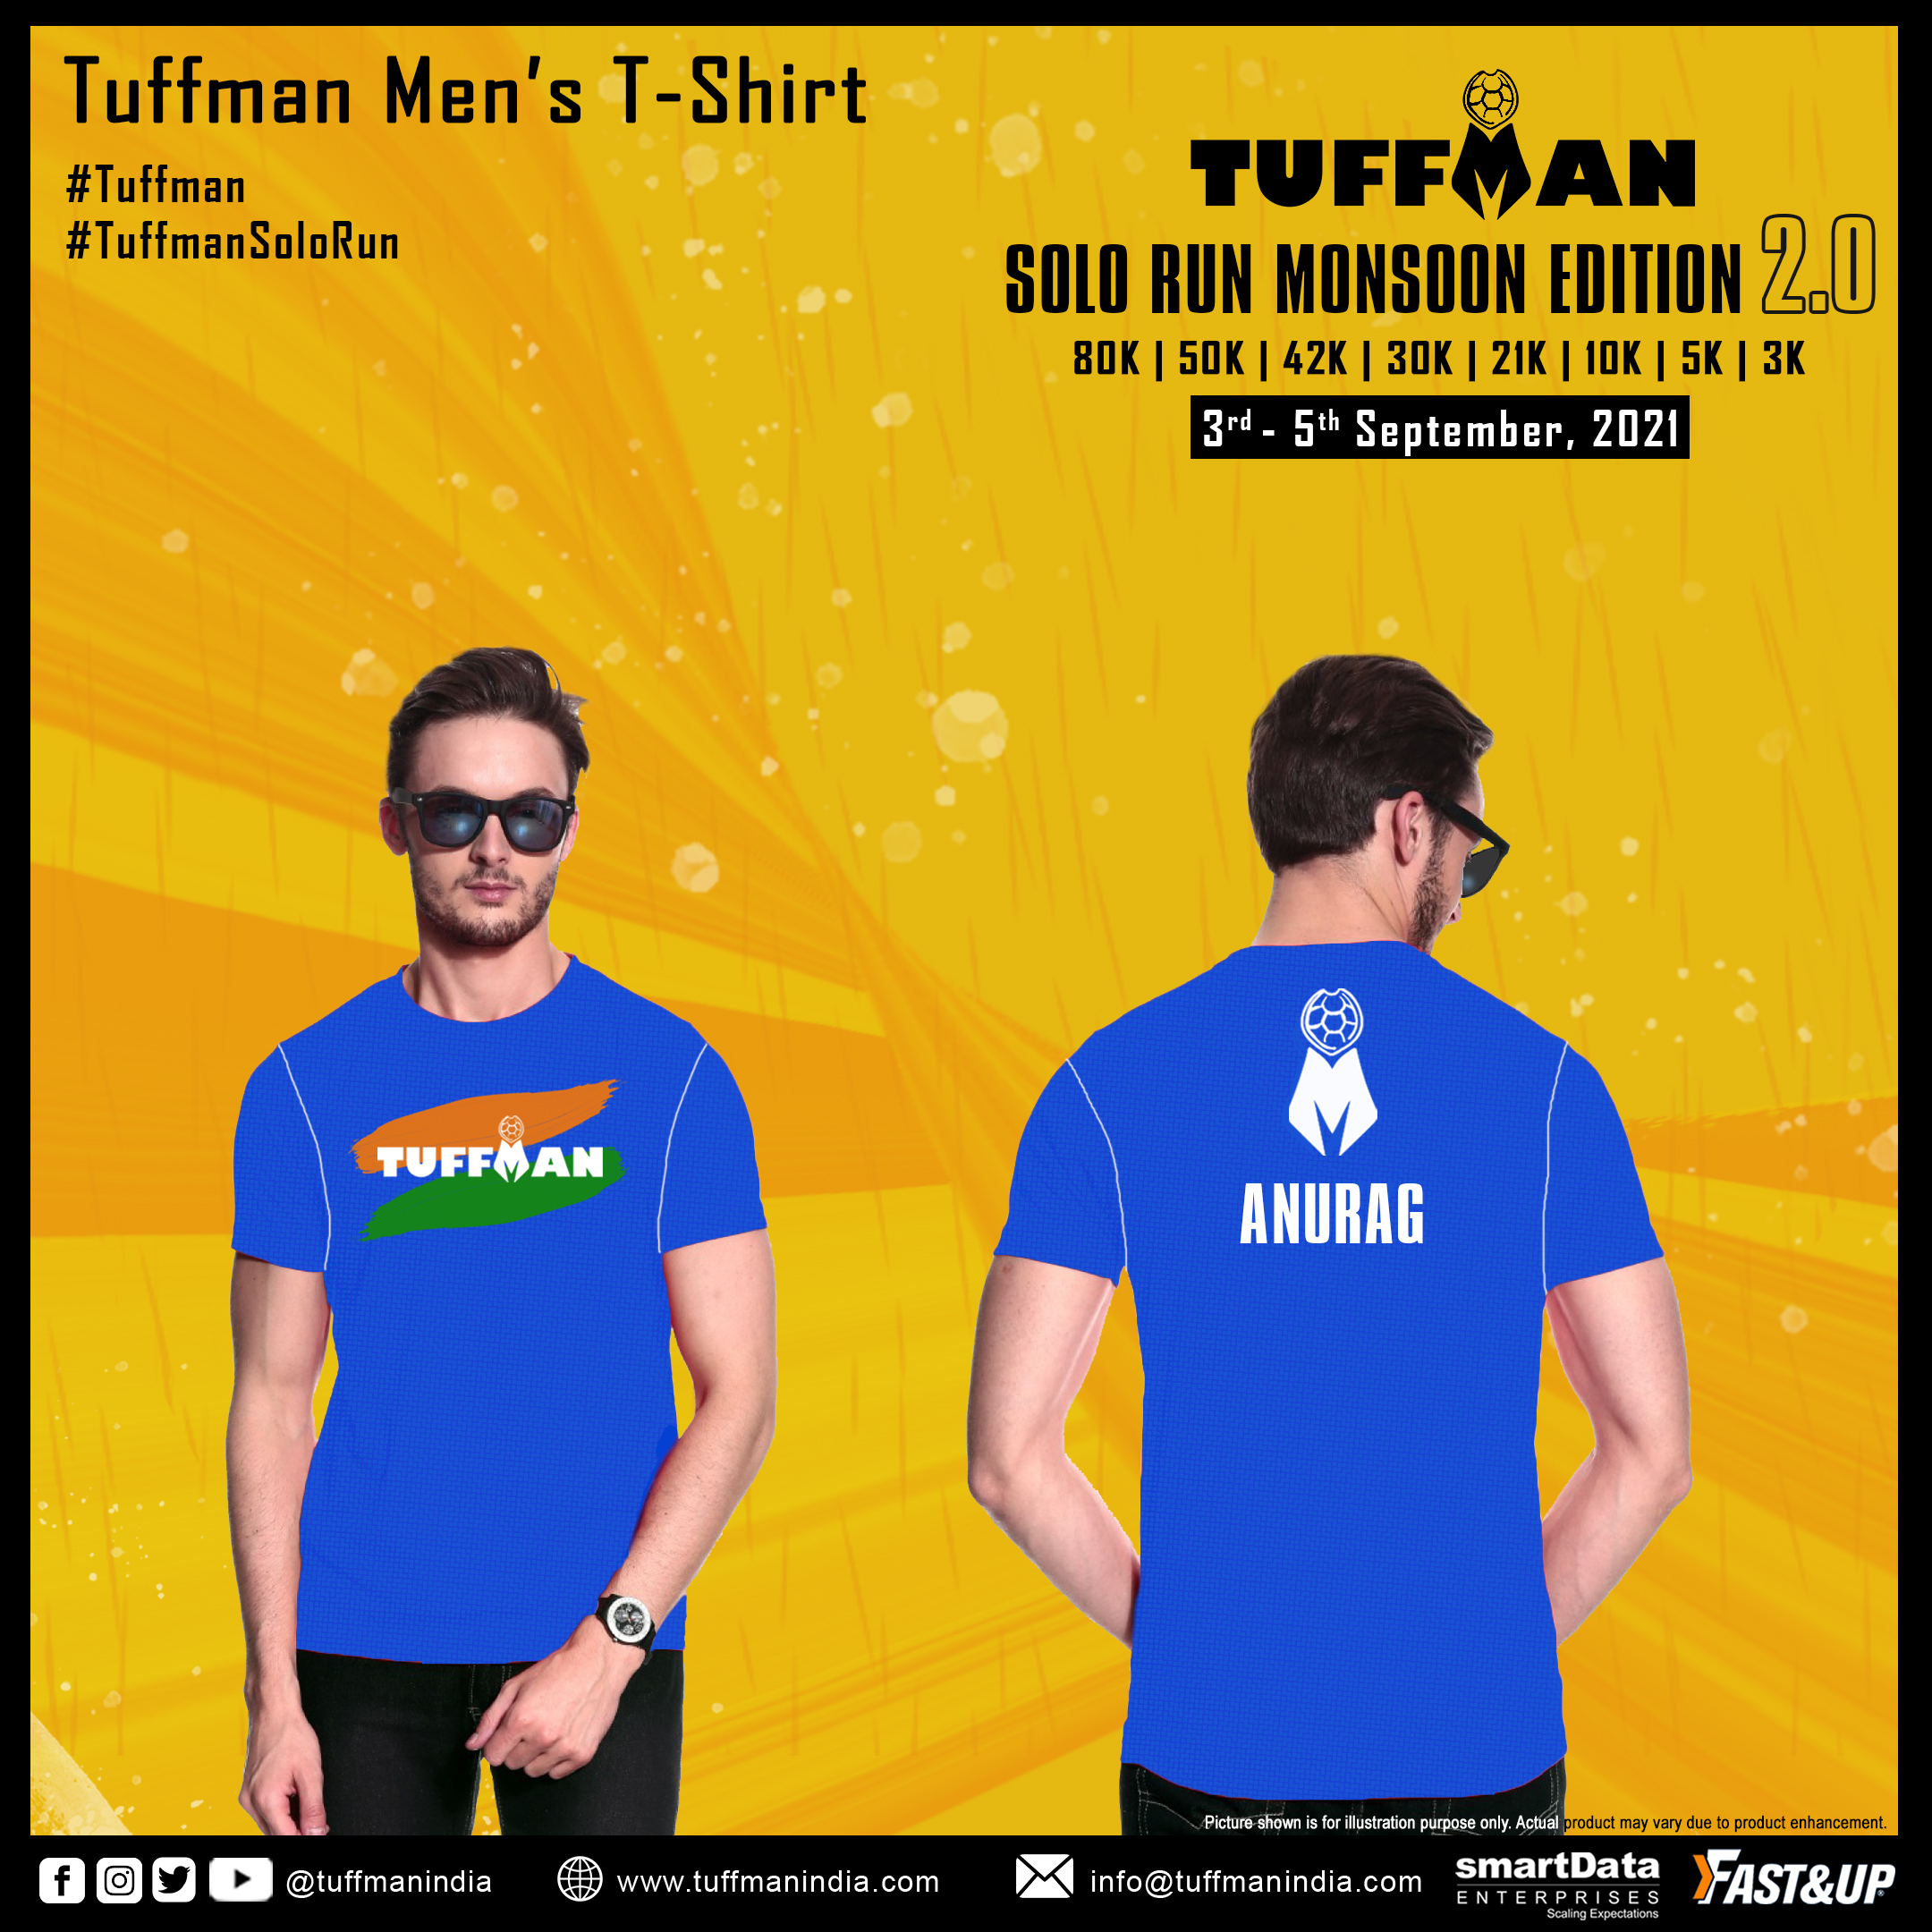 Tuffman Men's T-Shirt